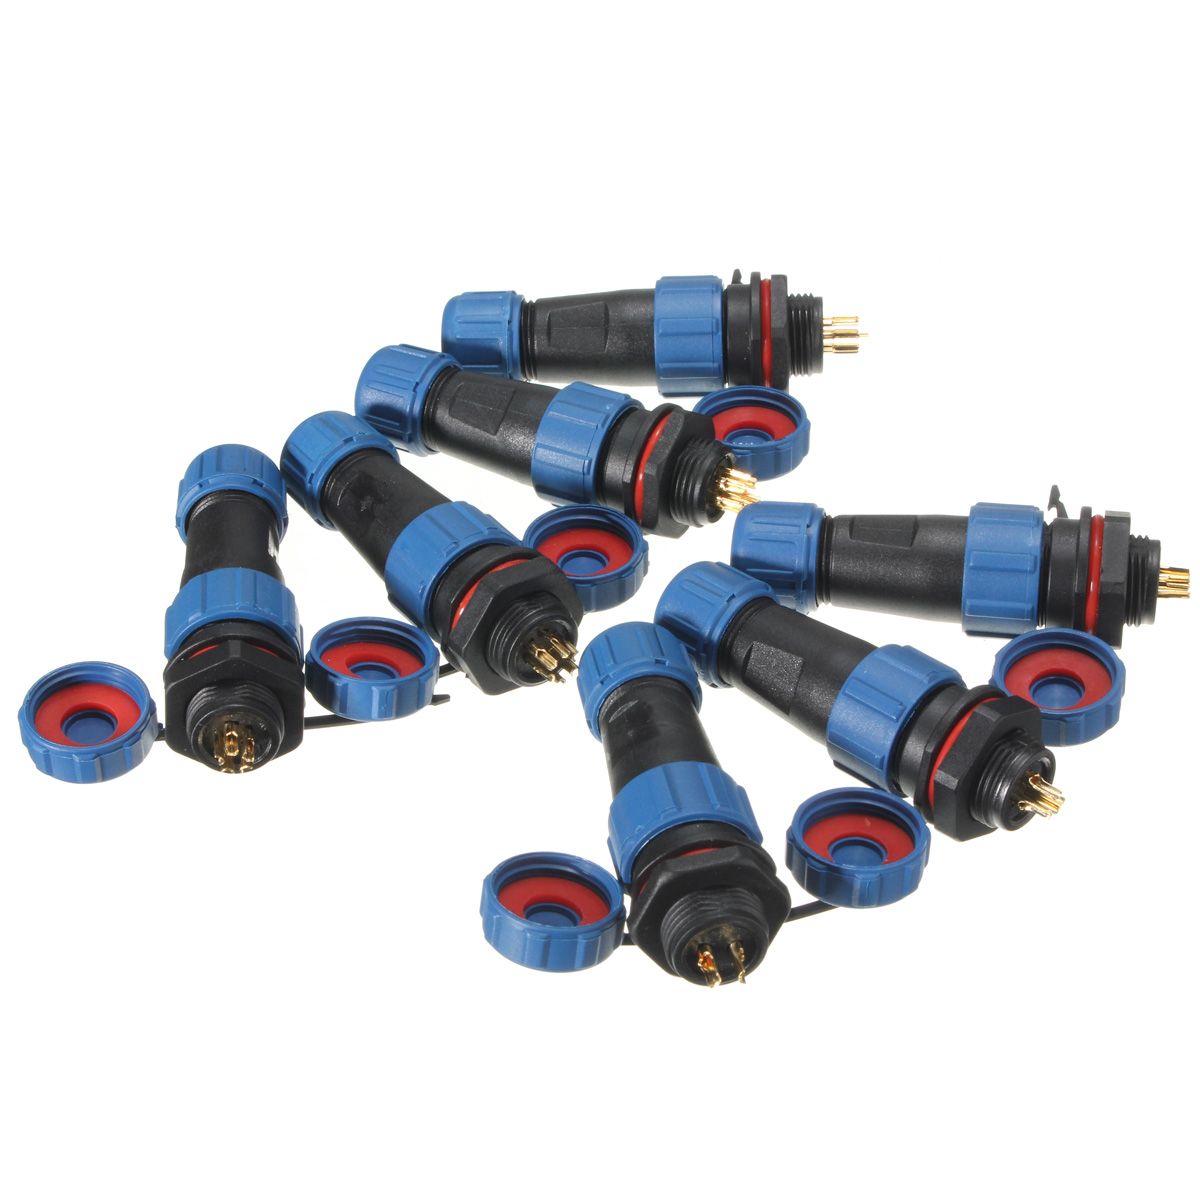 SP13-Circular-Plug-Socket-Connectors-IP68-Rated-2-Pin-to-9-Pin-1202226